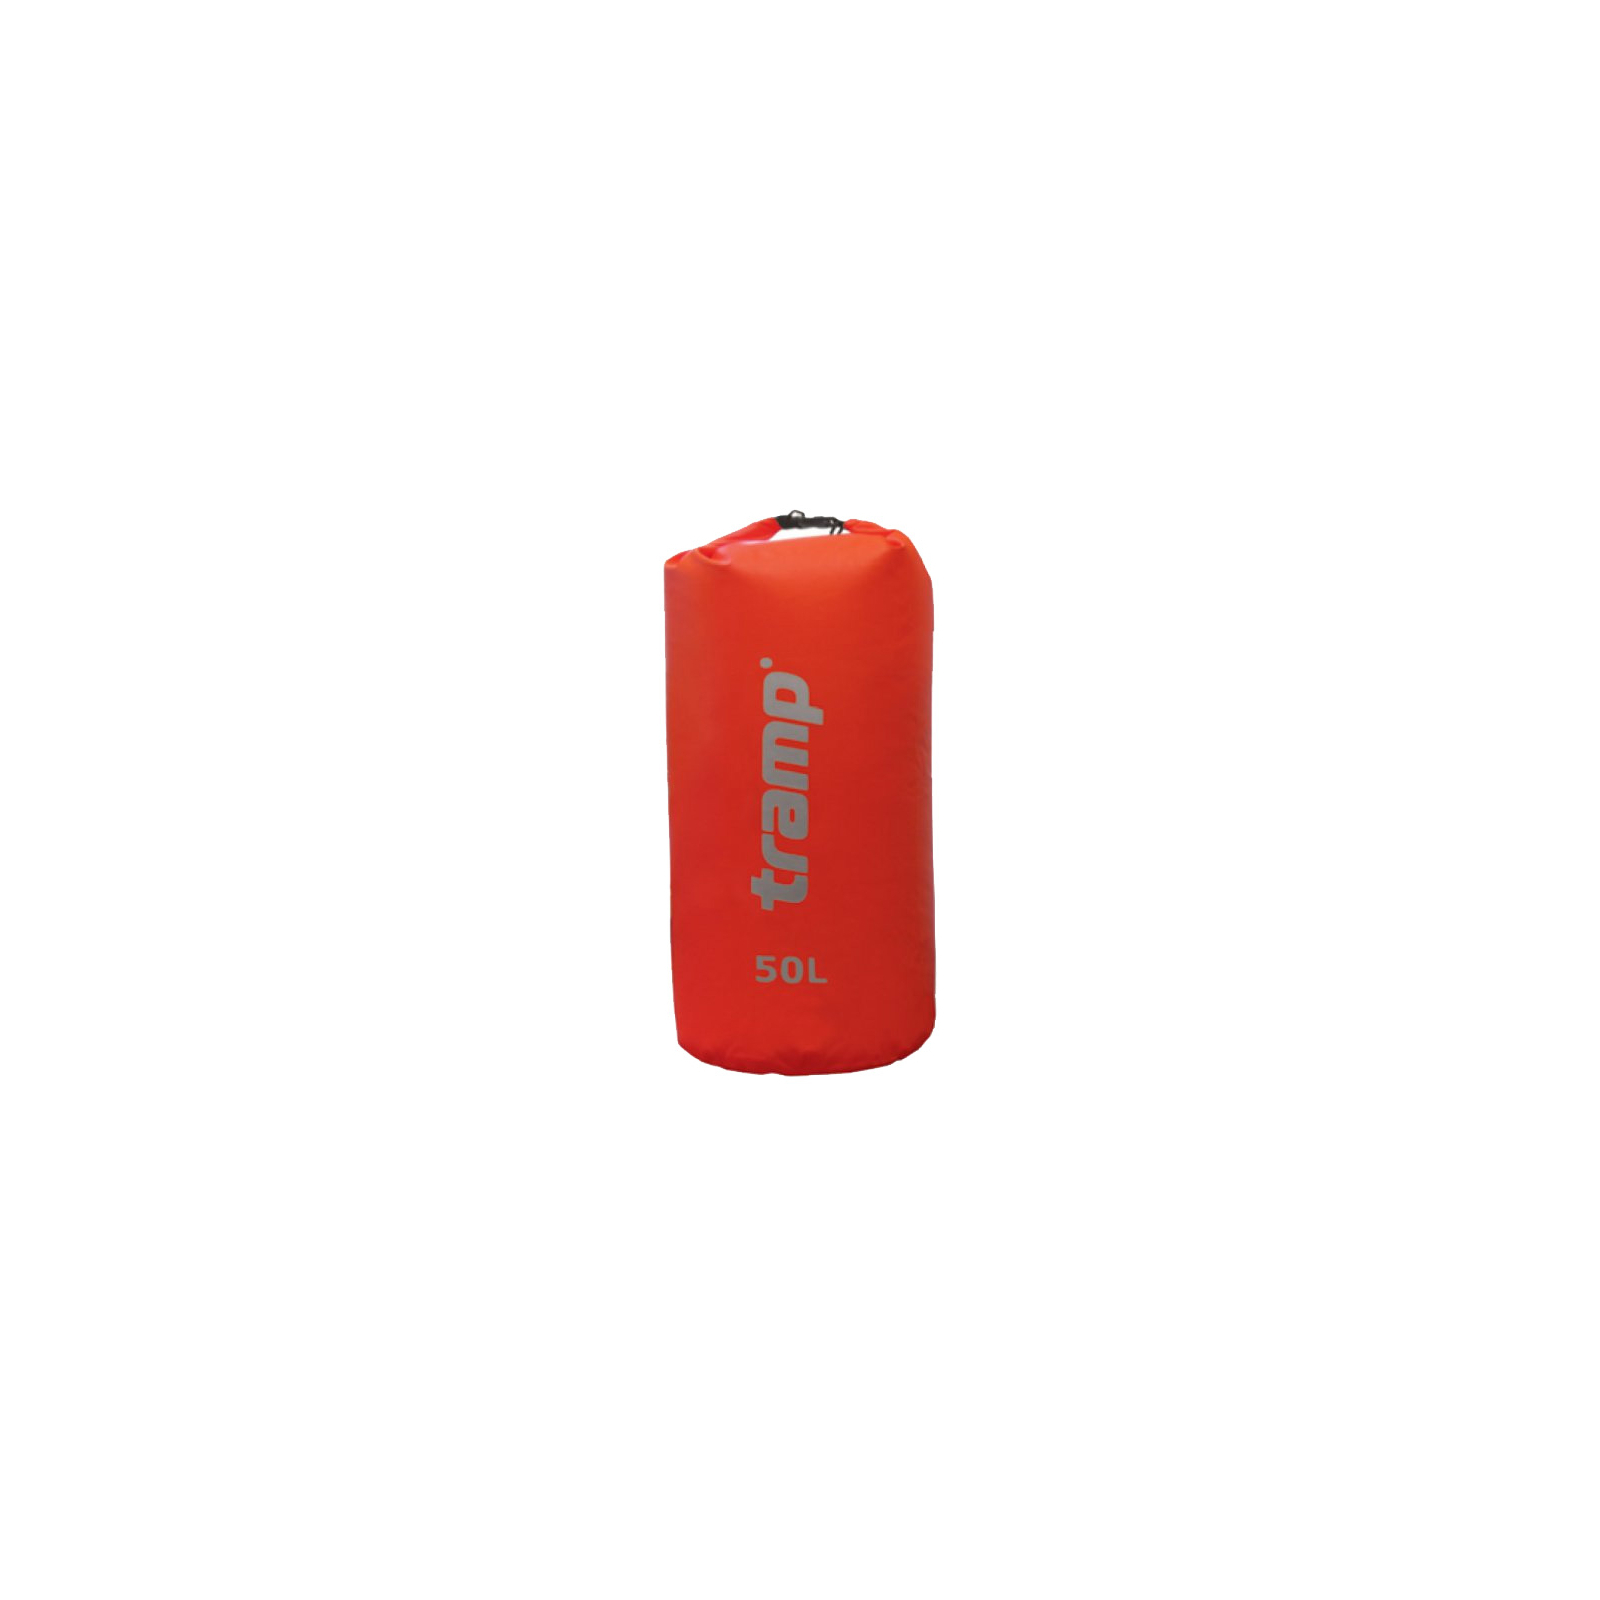 Гермомешок Tramp Nylon PVC 50 красный (TRA-103)